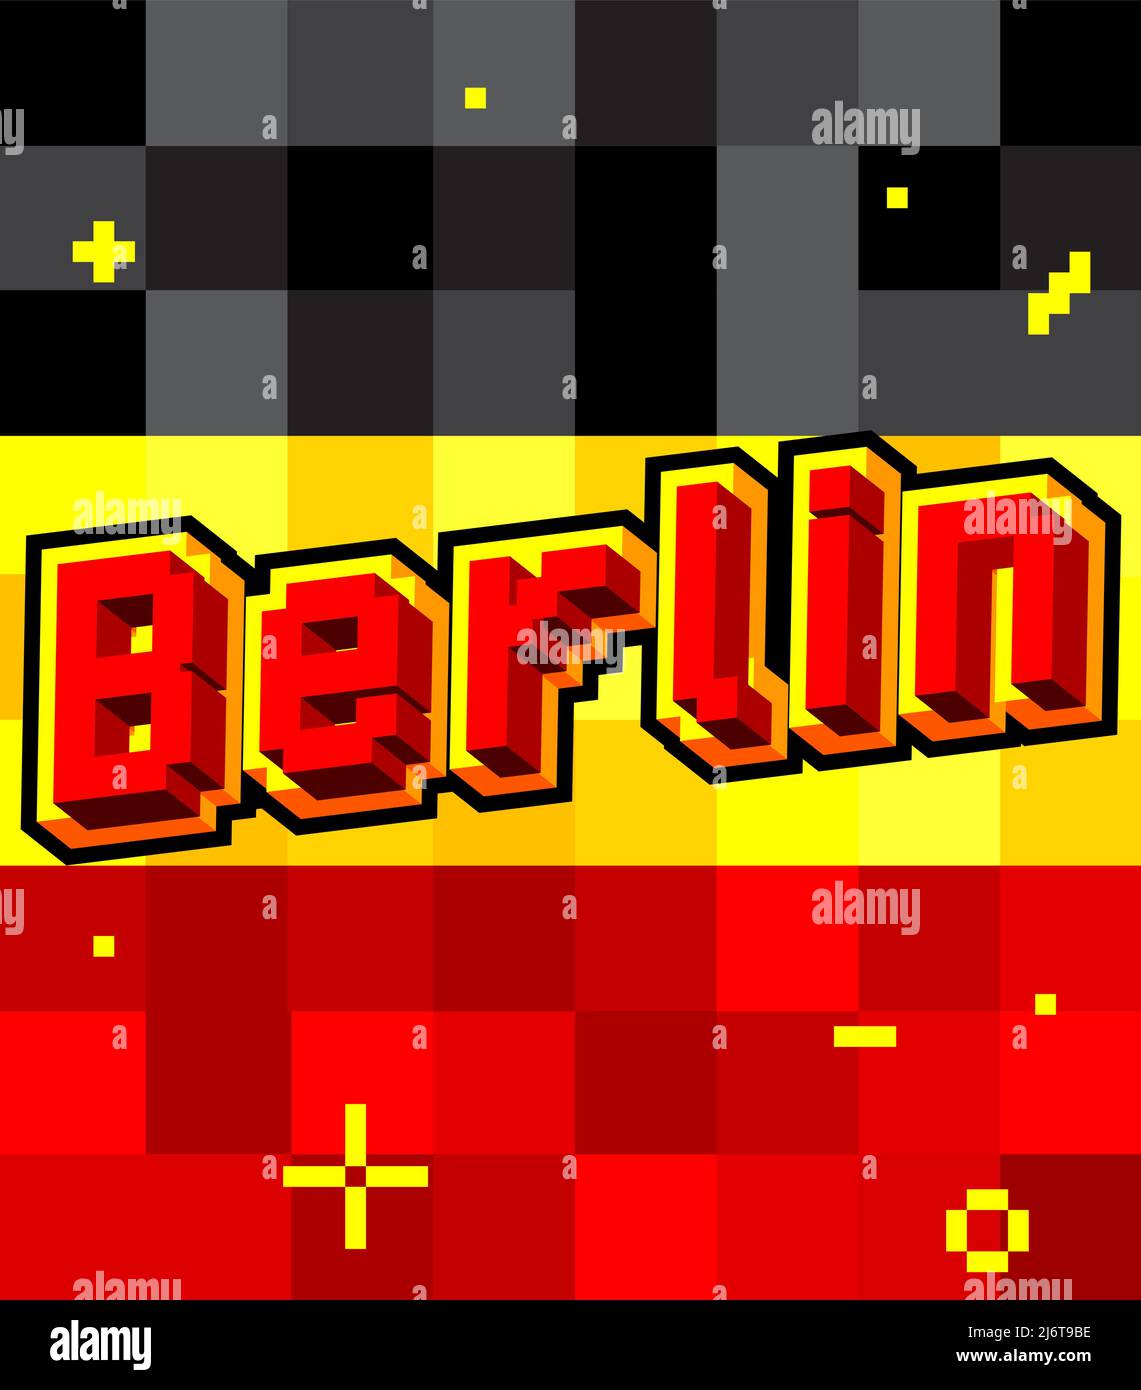 Berlin verpixeltes Wort mit geometrischem grafischem Hintergrund. Vektorgrafik Cartoon-Illustration. Stock Vektor